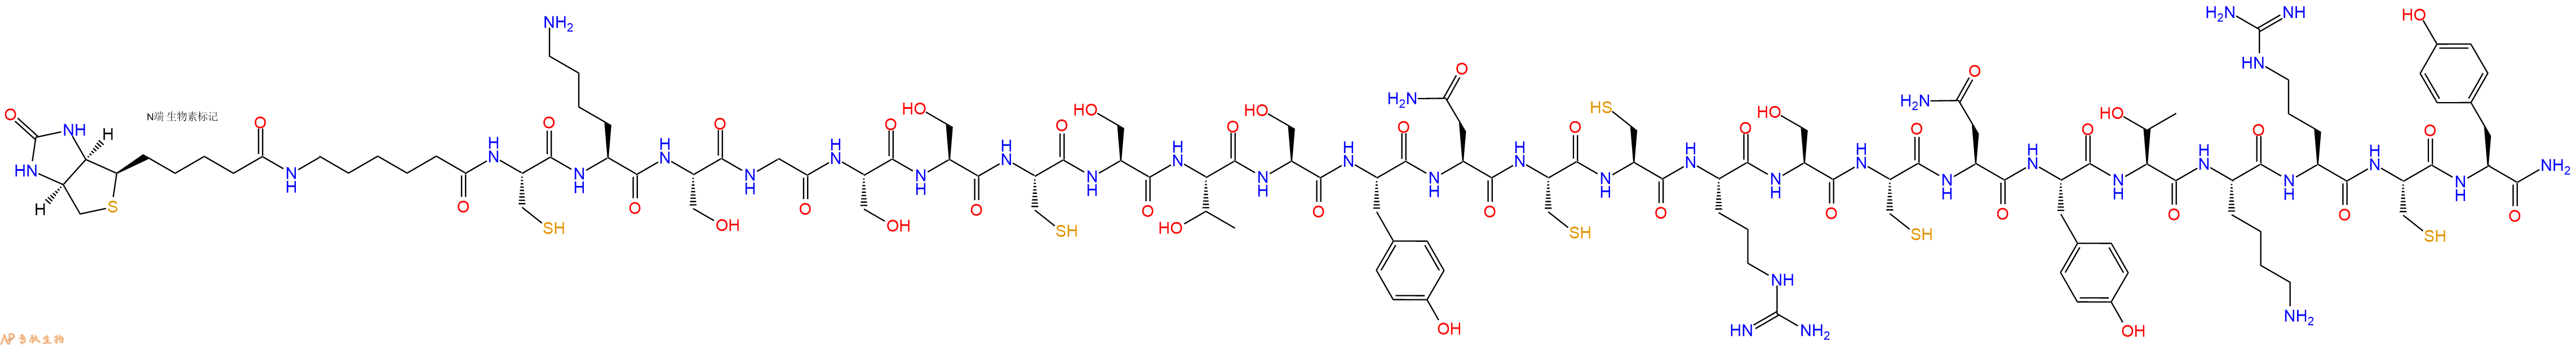 专肽生物产品Biotin-Ahx-Cys-Lys-Ser-Gly-Ser-Ser-Cys-Ser-Thr-Ser